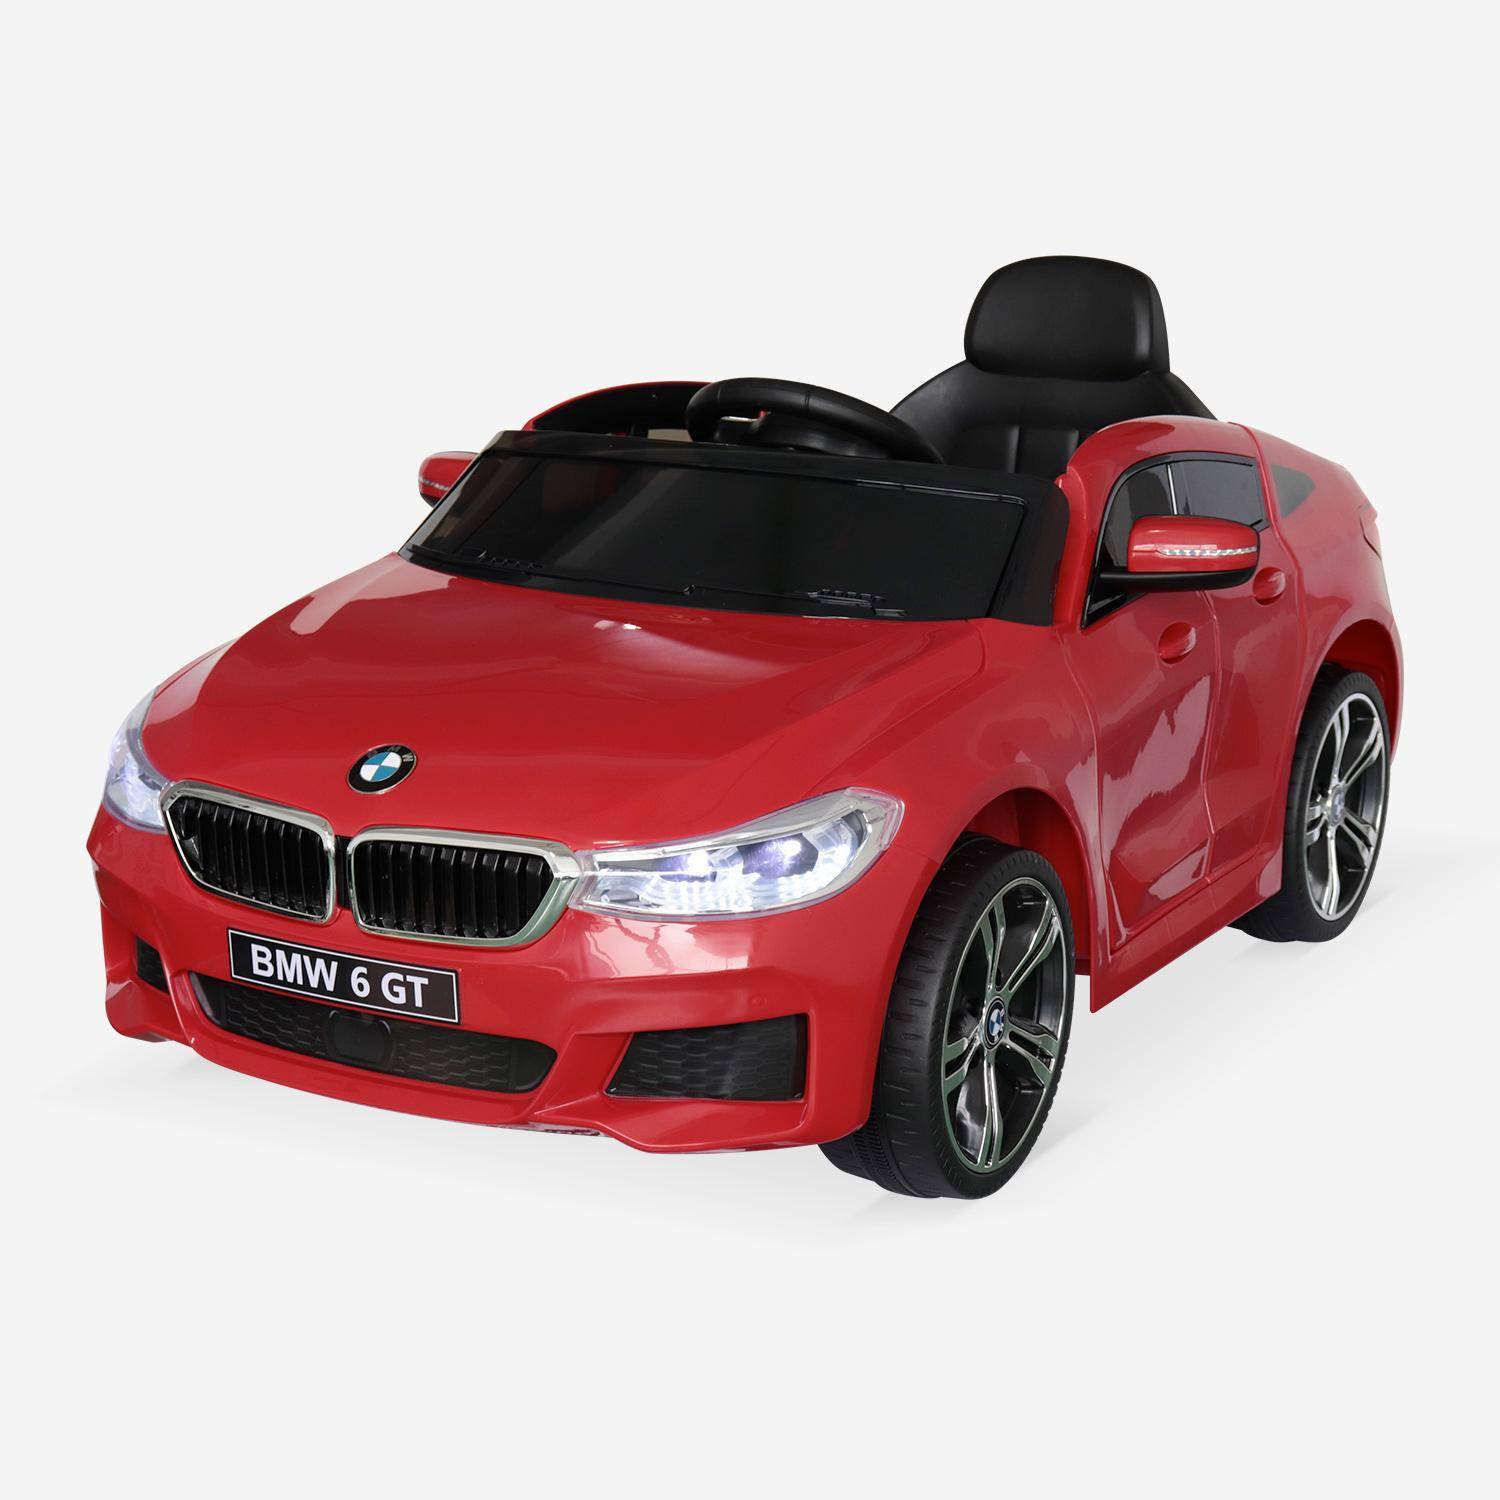 BMW Serie 6 GT Gran Turismo rossa, macchina elettrica per bambini 12V 4 Ah, 1 posto, con autoradio e telecomando Photo2